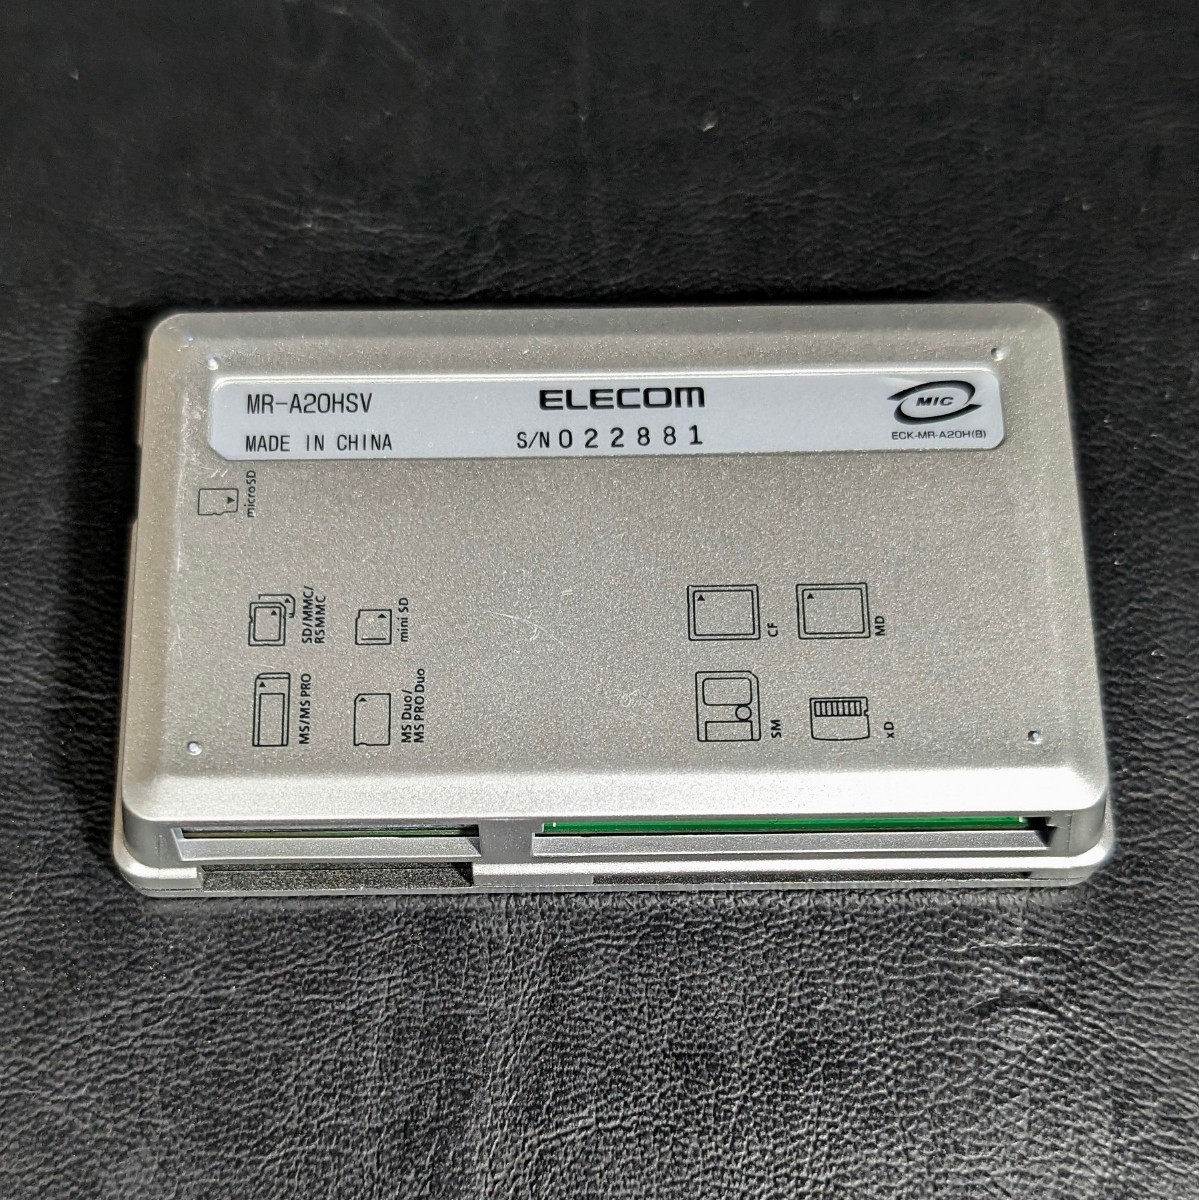  установленный снаружи устройство для считывания карт 2 пункт суммировать Buffalo BUFFALO CardReader MCR-C30/U2-BK Elecom ELECOM MULTI CARD READER MR-A20HSV текущее состояние товар 